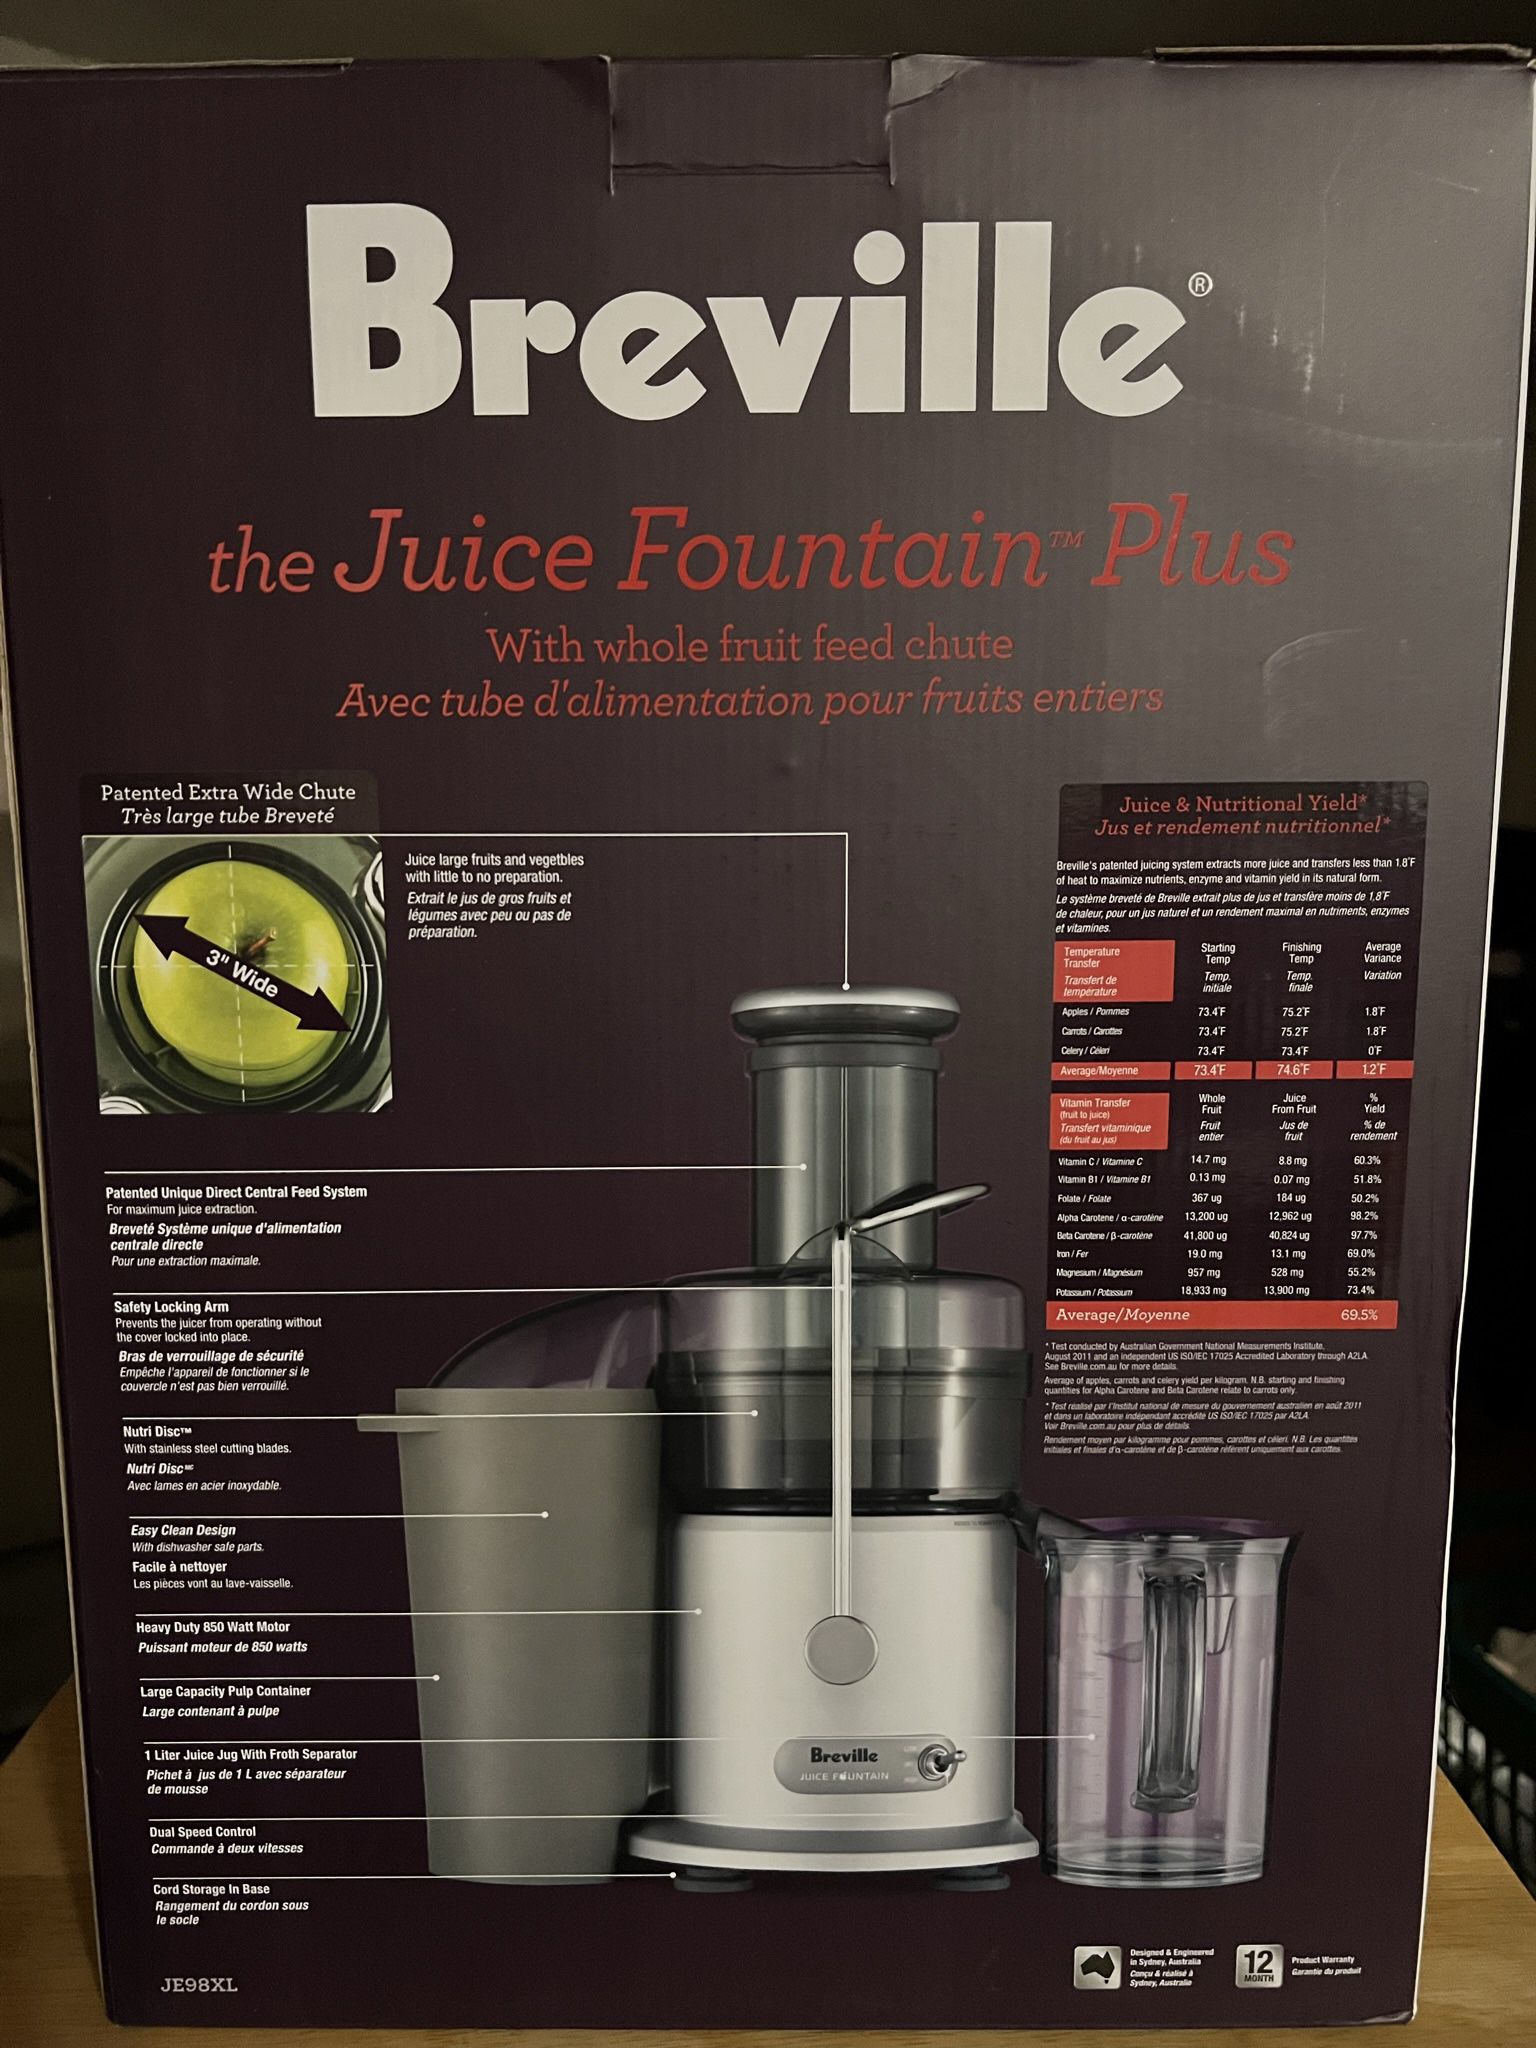 Breville juicer